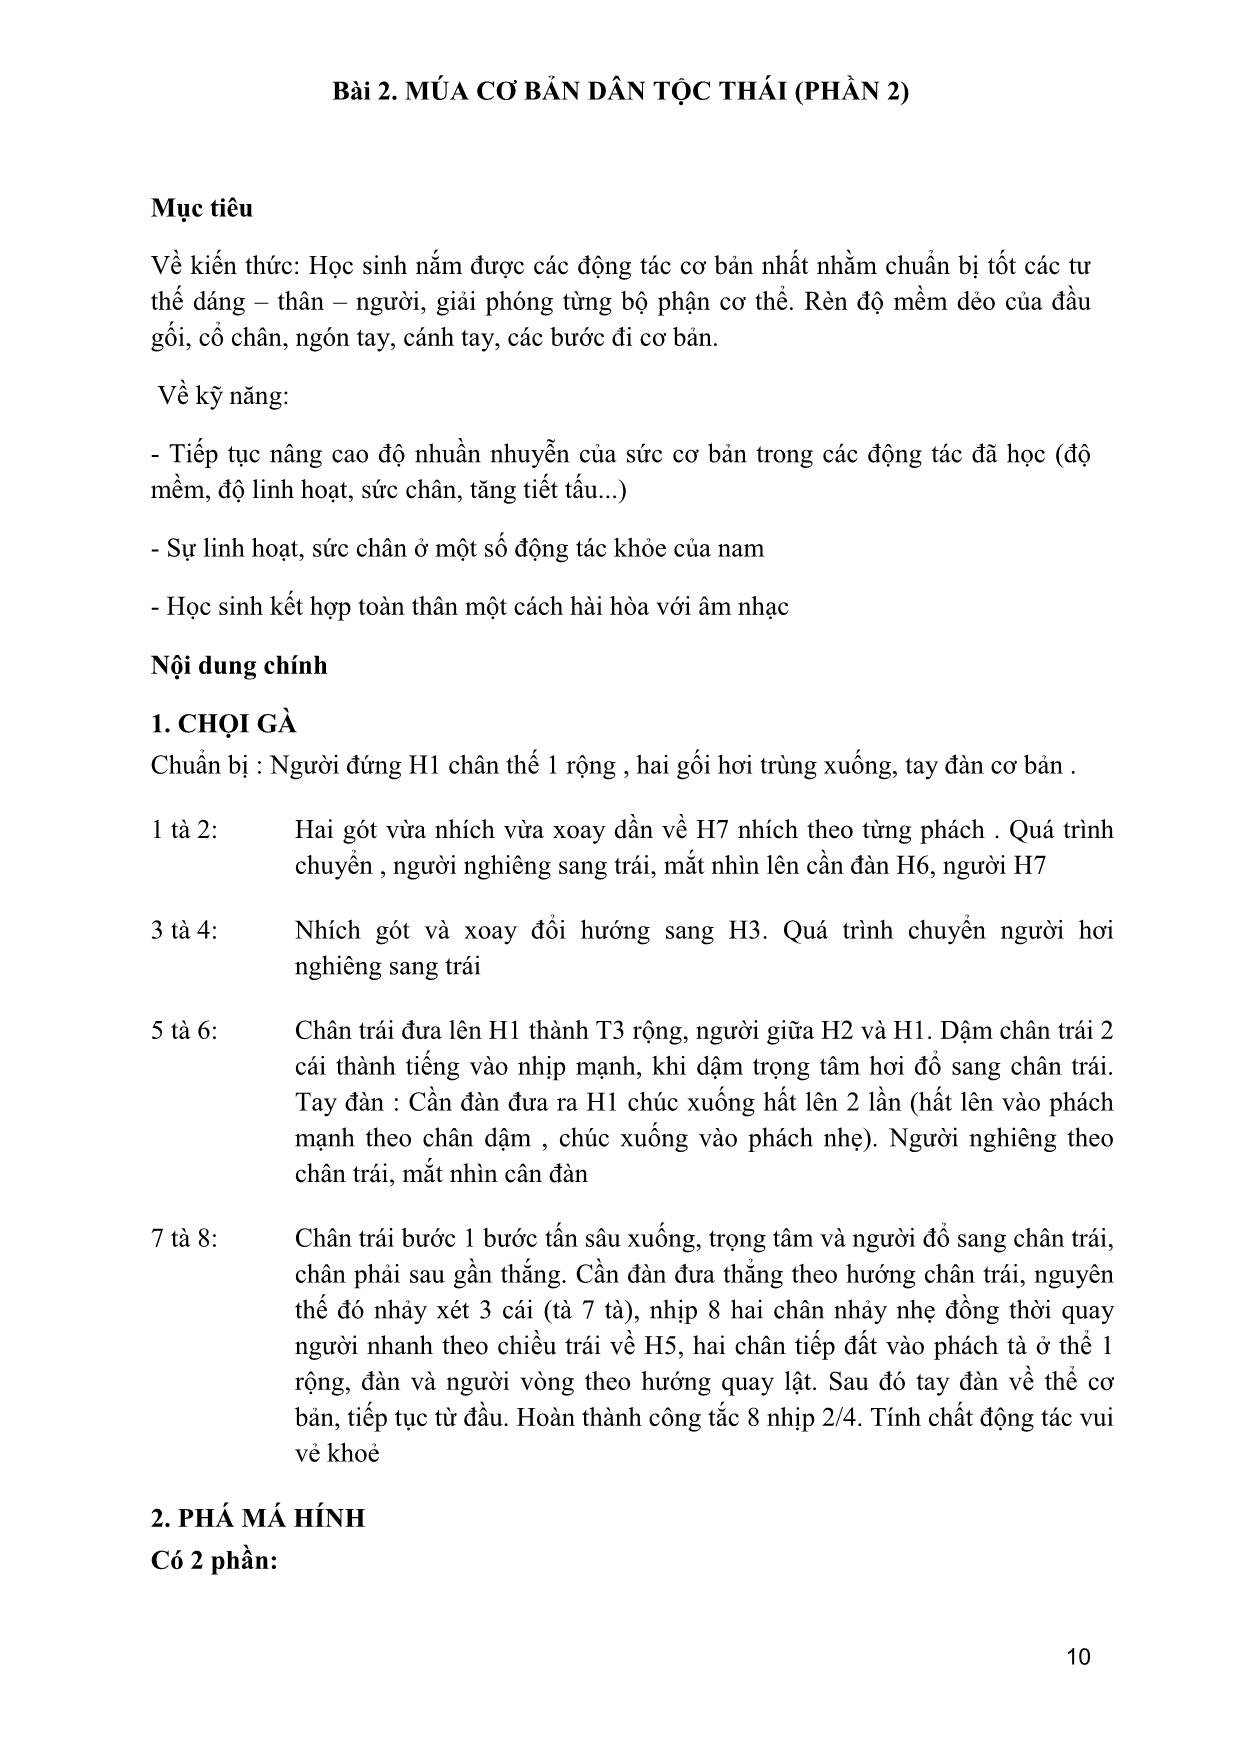 Giáo trình Múa dân gian dân tộc Việt Nam 4 trang 9